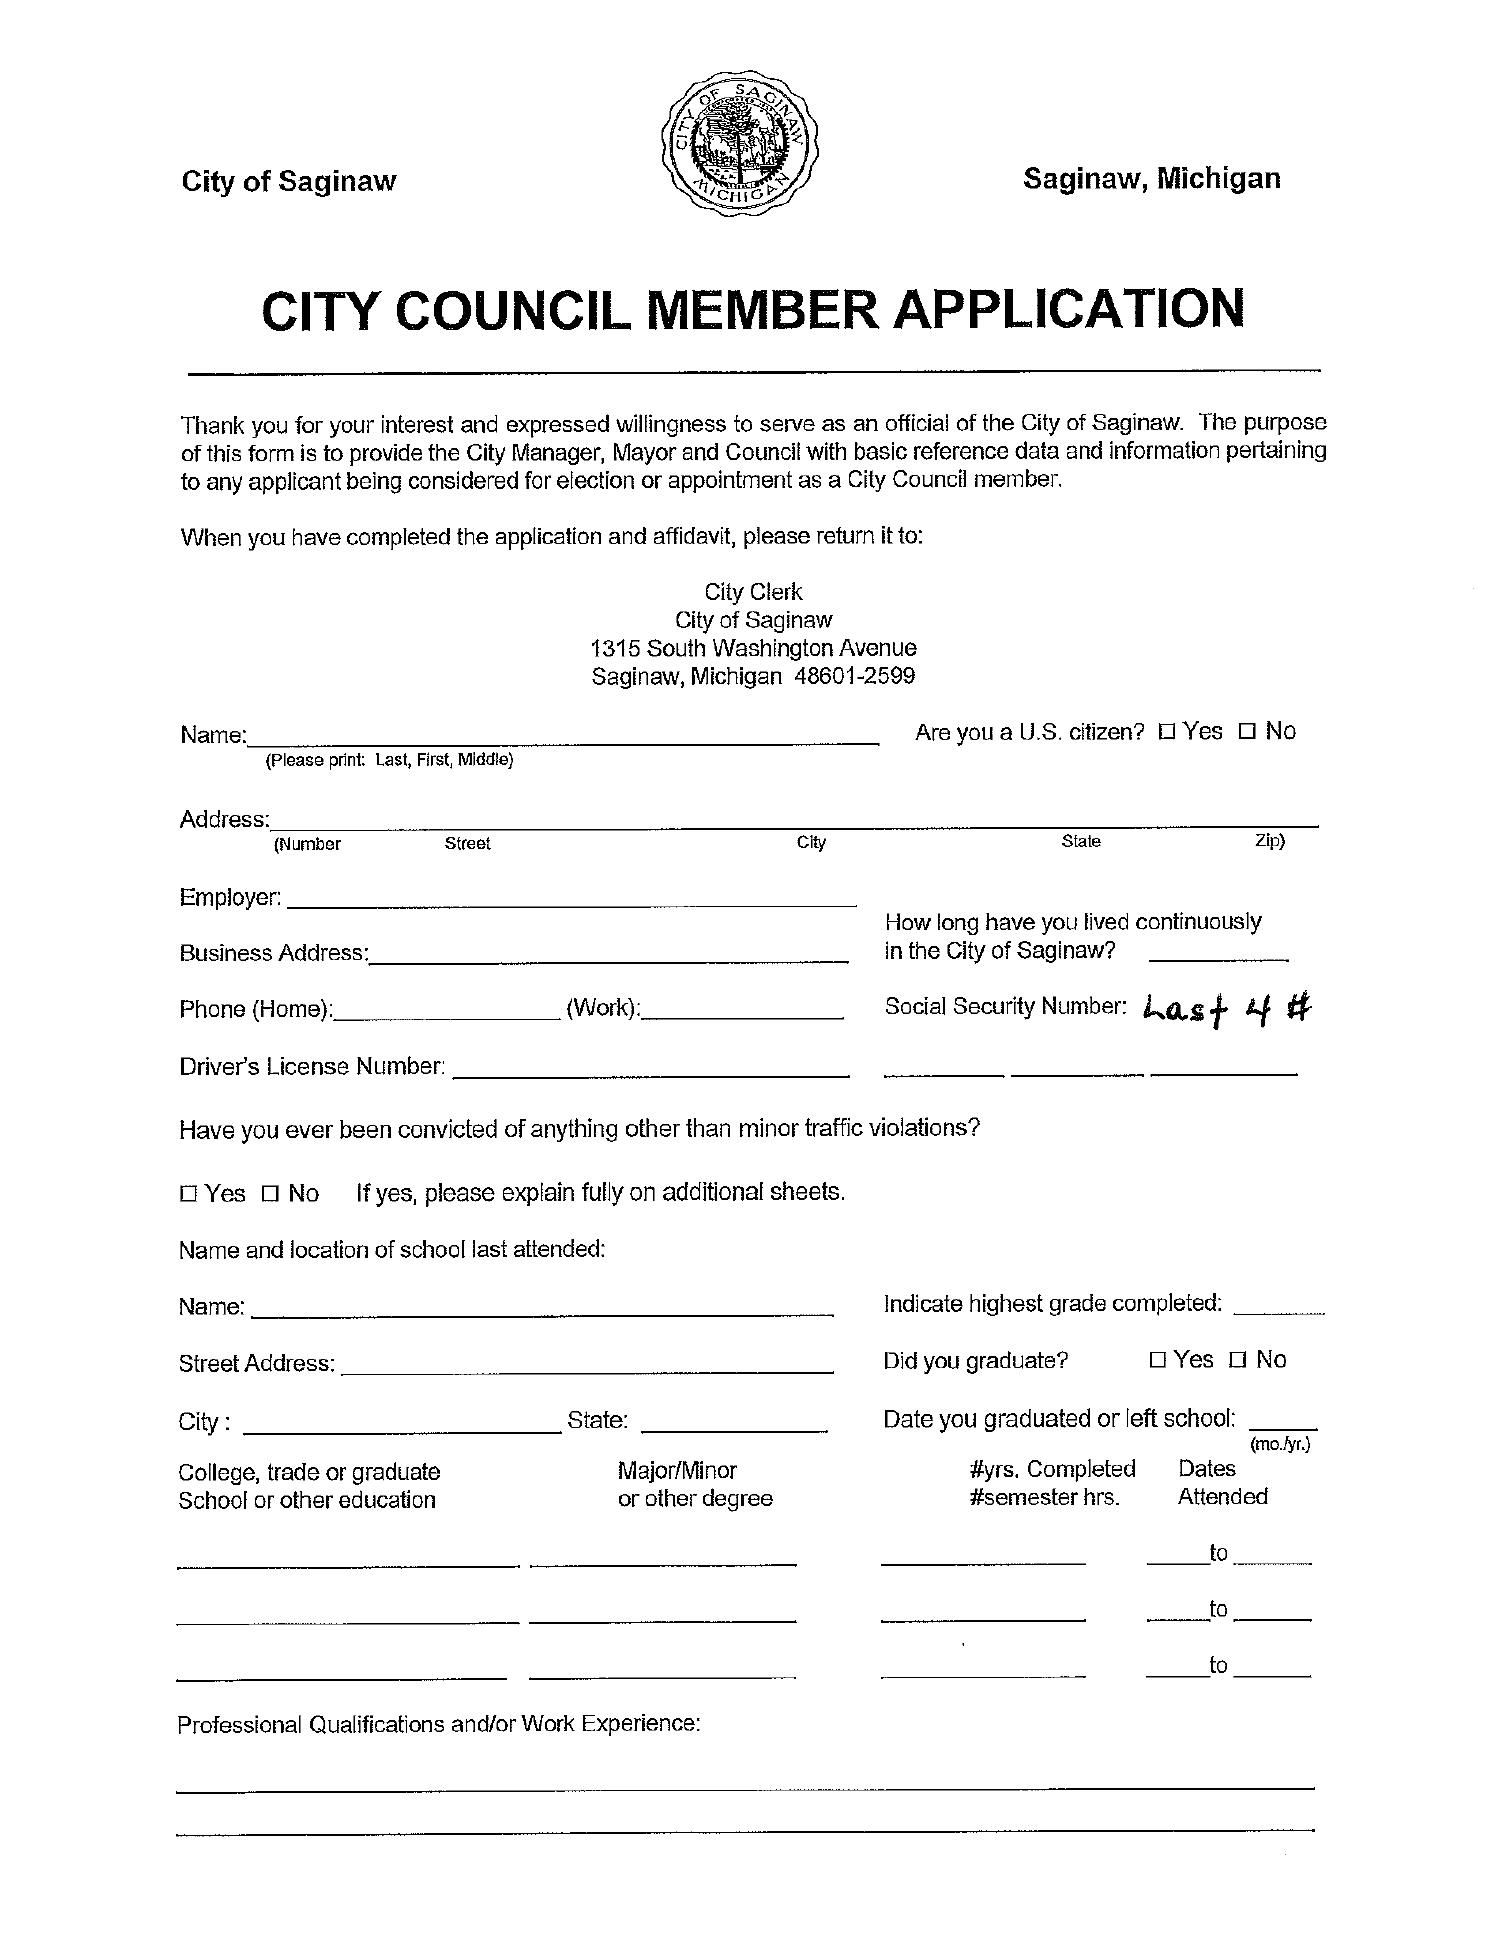 Council Application pdf DocDroid